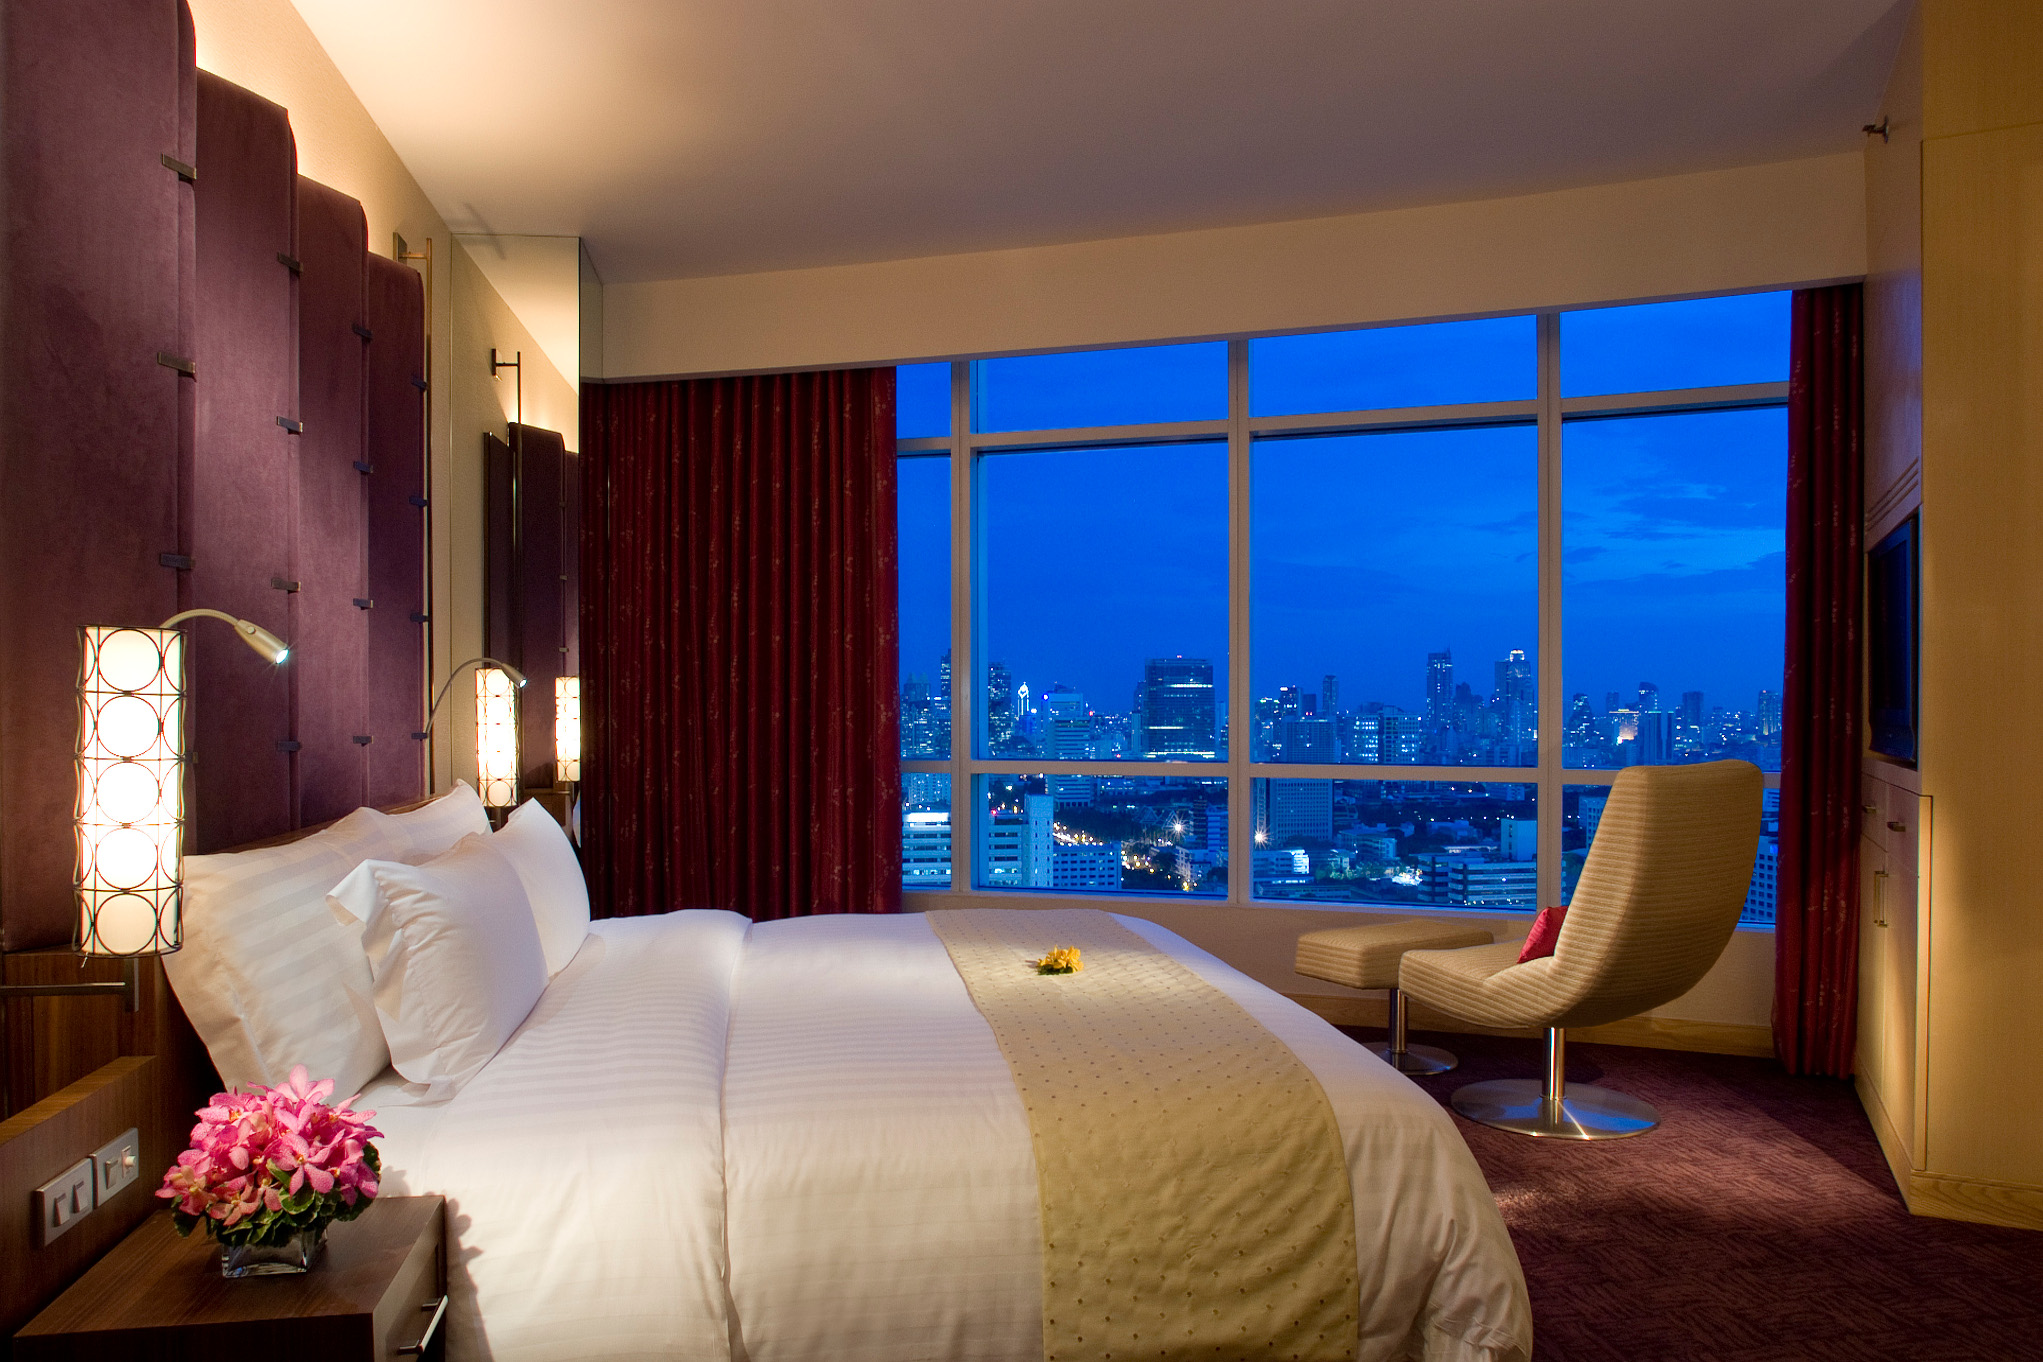 Включи bedroom. Красивая комната. Спальня в отеле. Спальня с панорамными окнами. Красивая спальня.